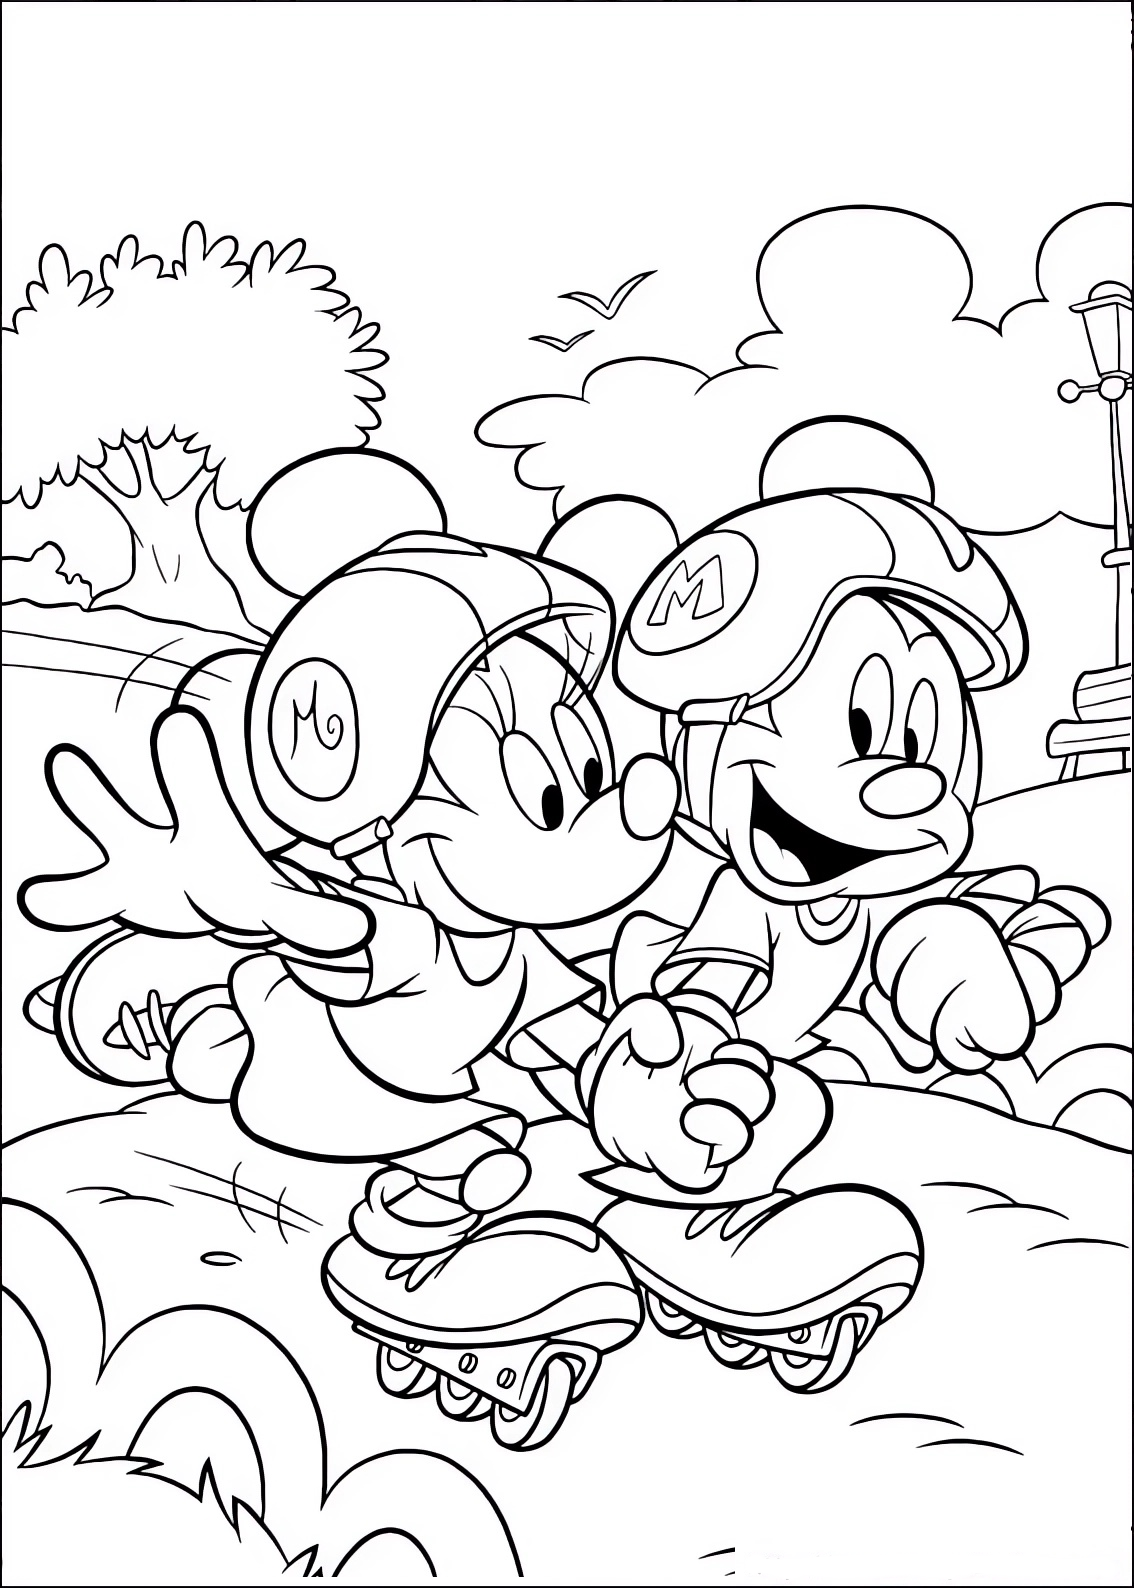 Disegno da colorare di Minnie e Topolino (Mickey Mouse) con i pattini roller